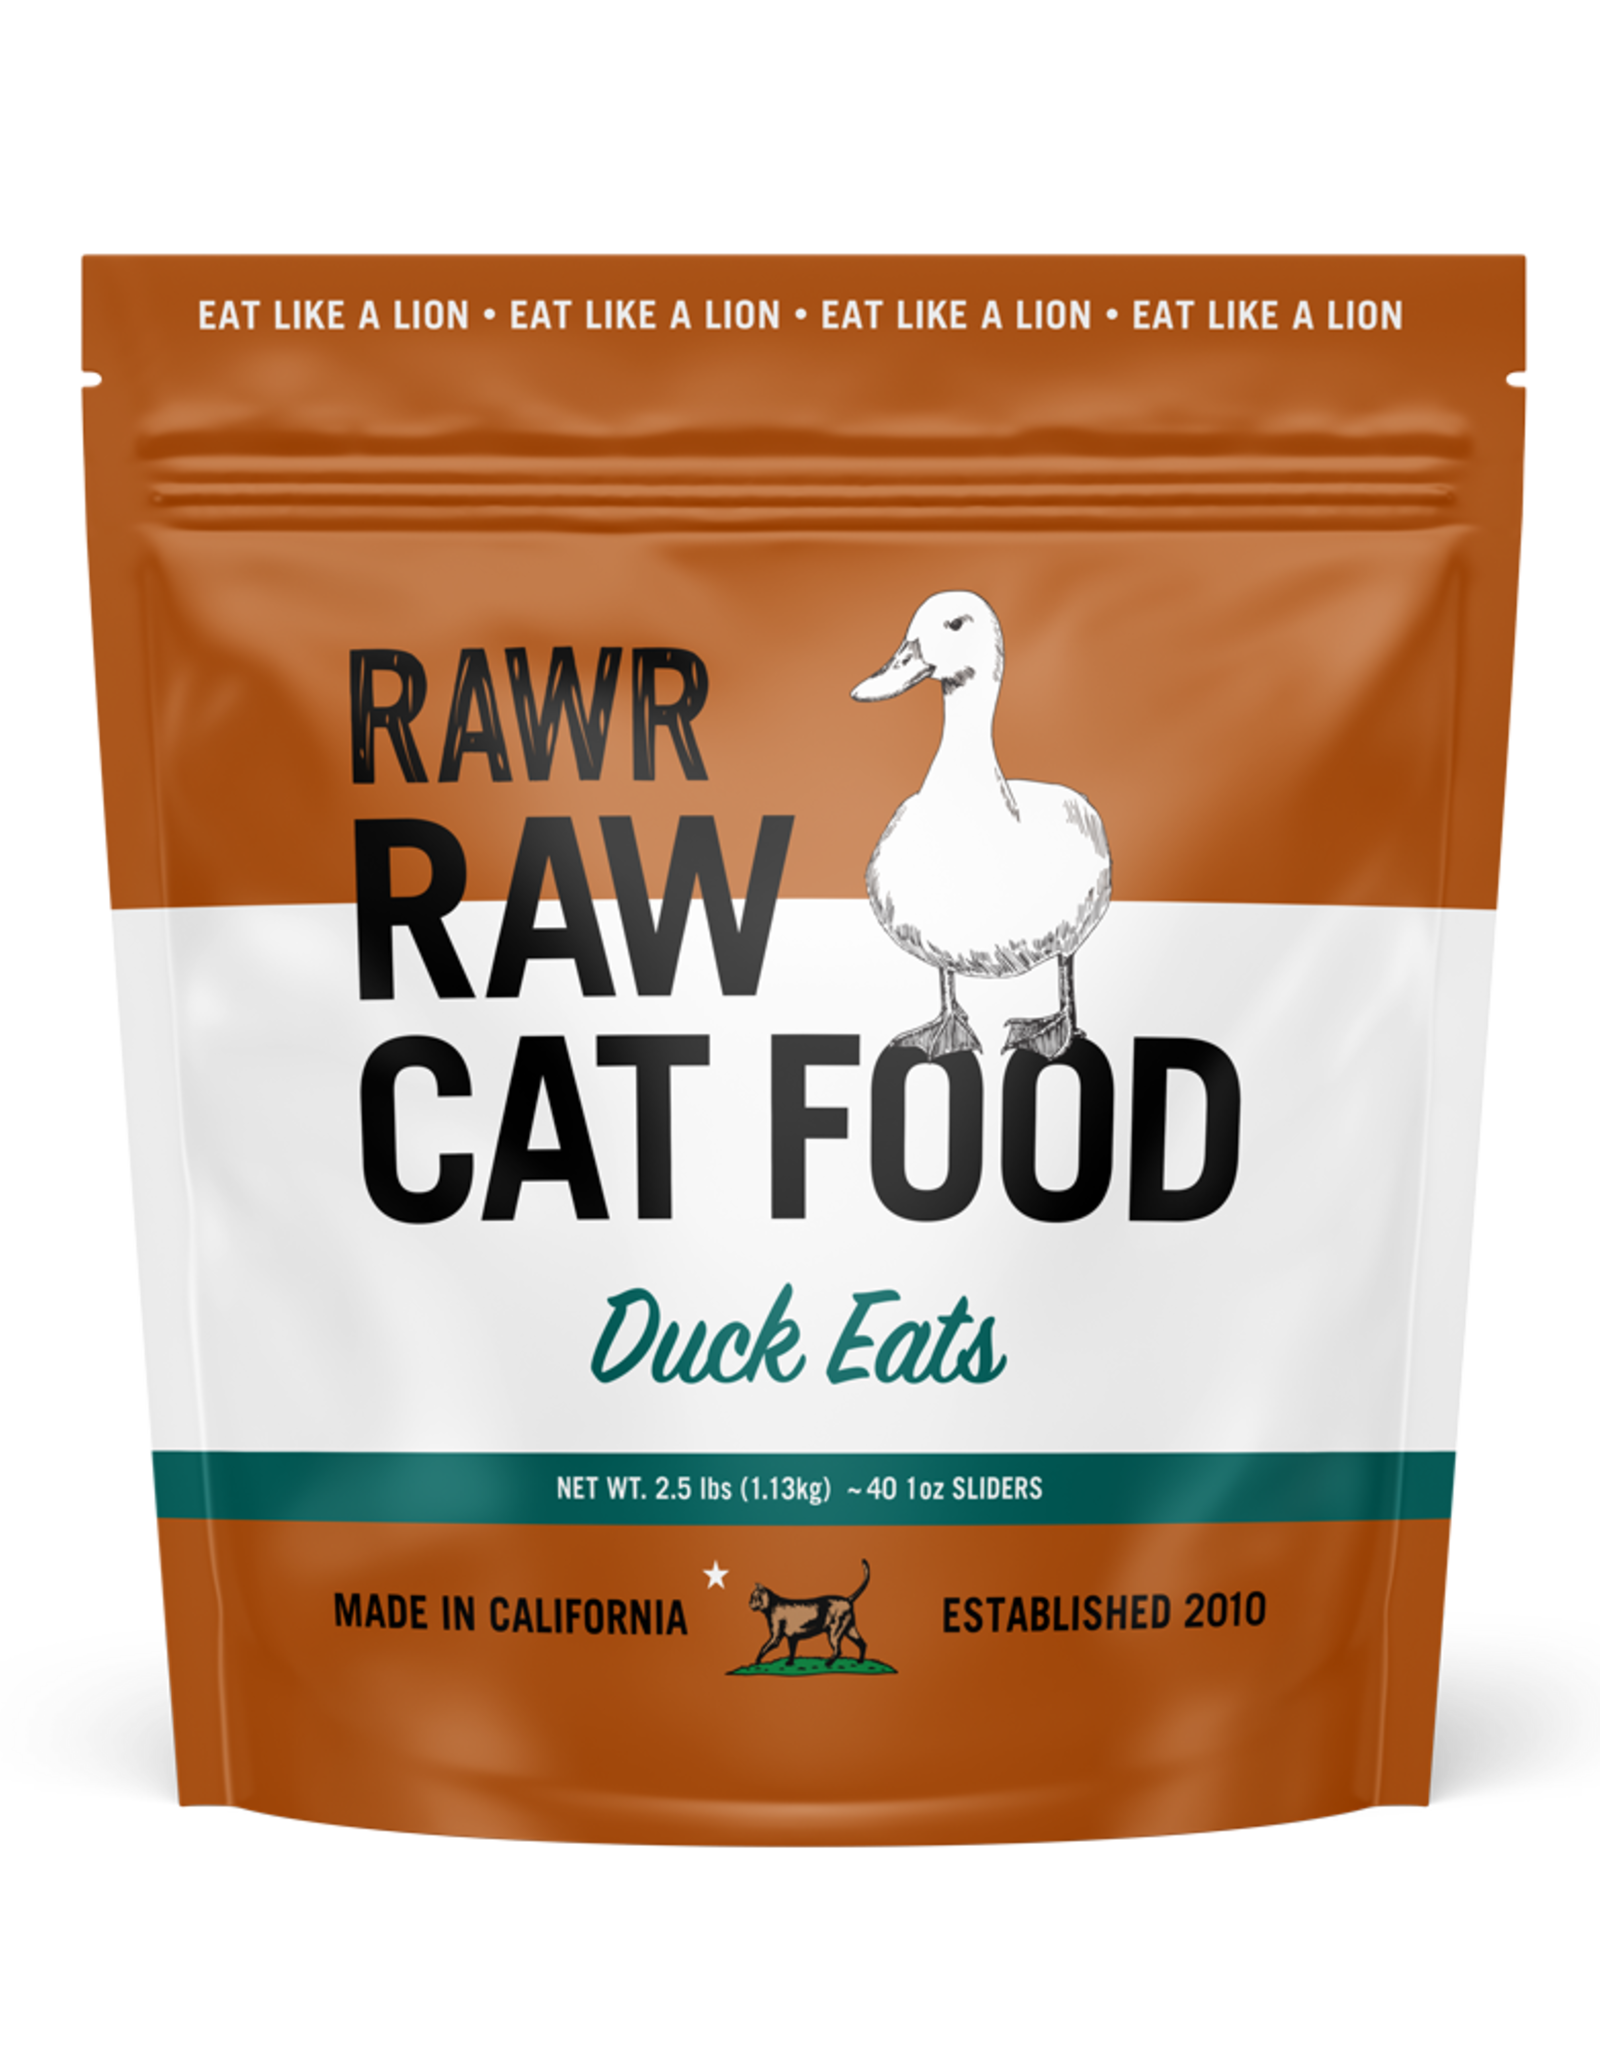 Rawr Rawr Duck Eats - Bone In Complete 2.5lb